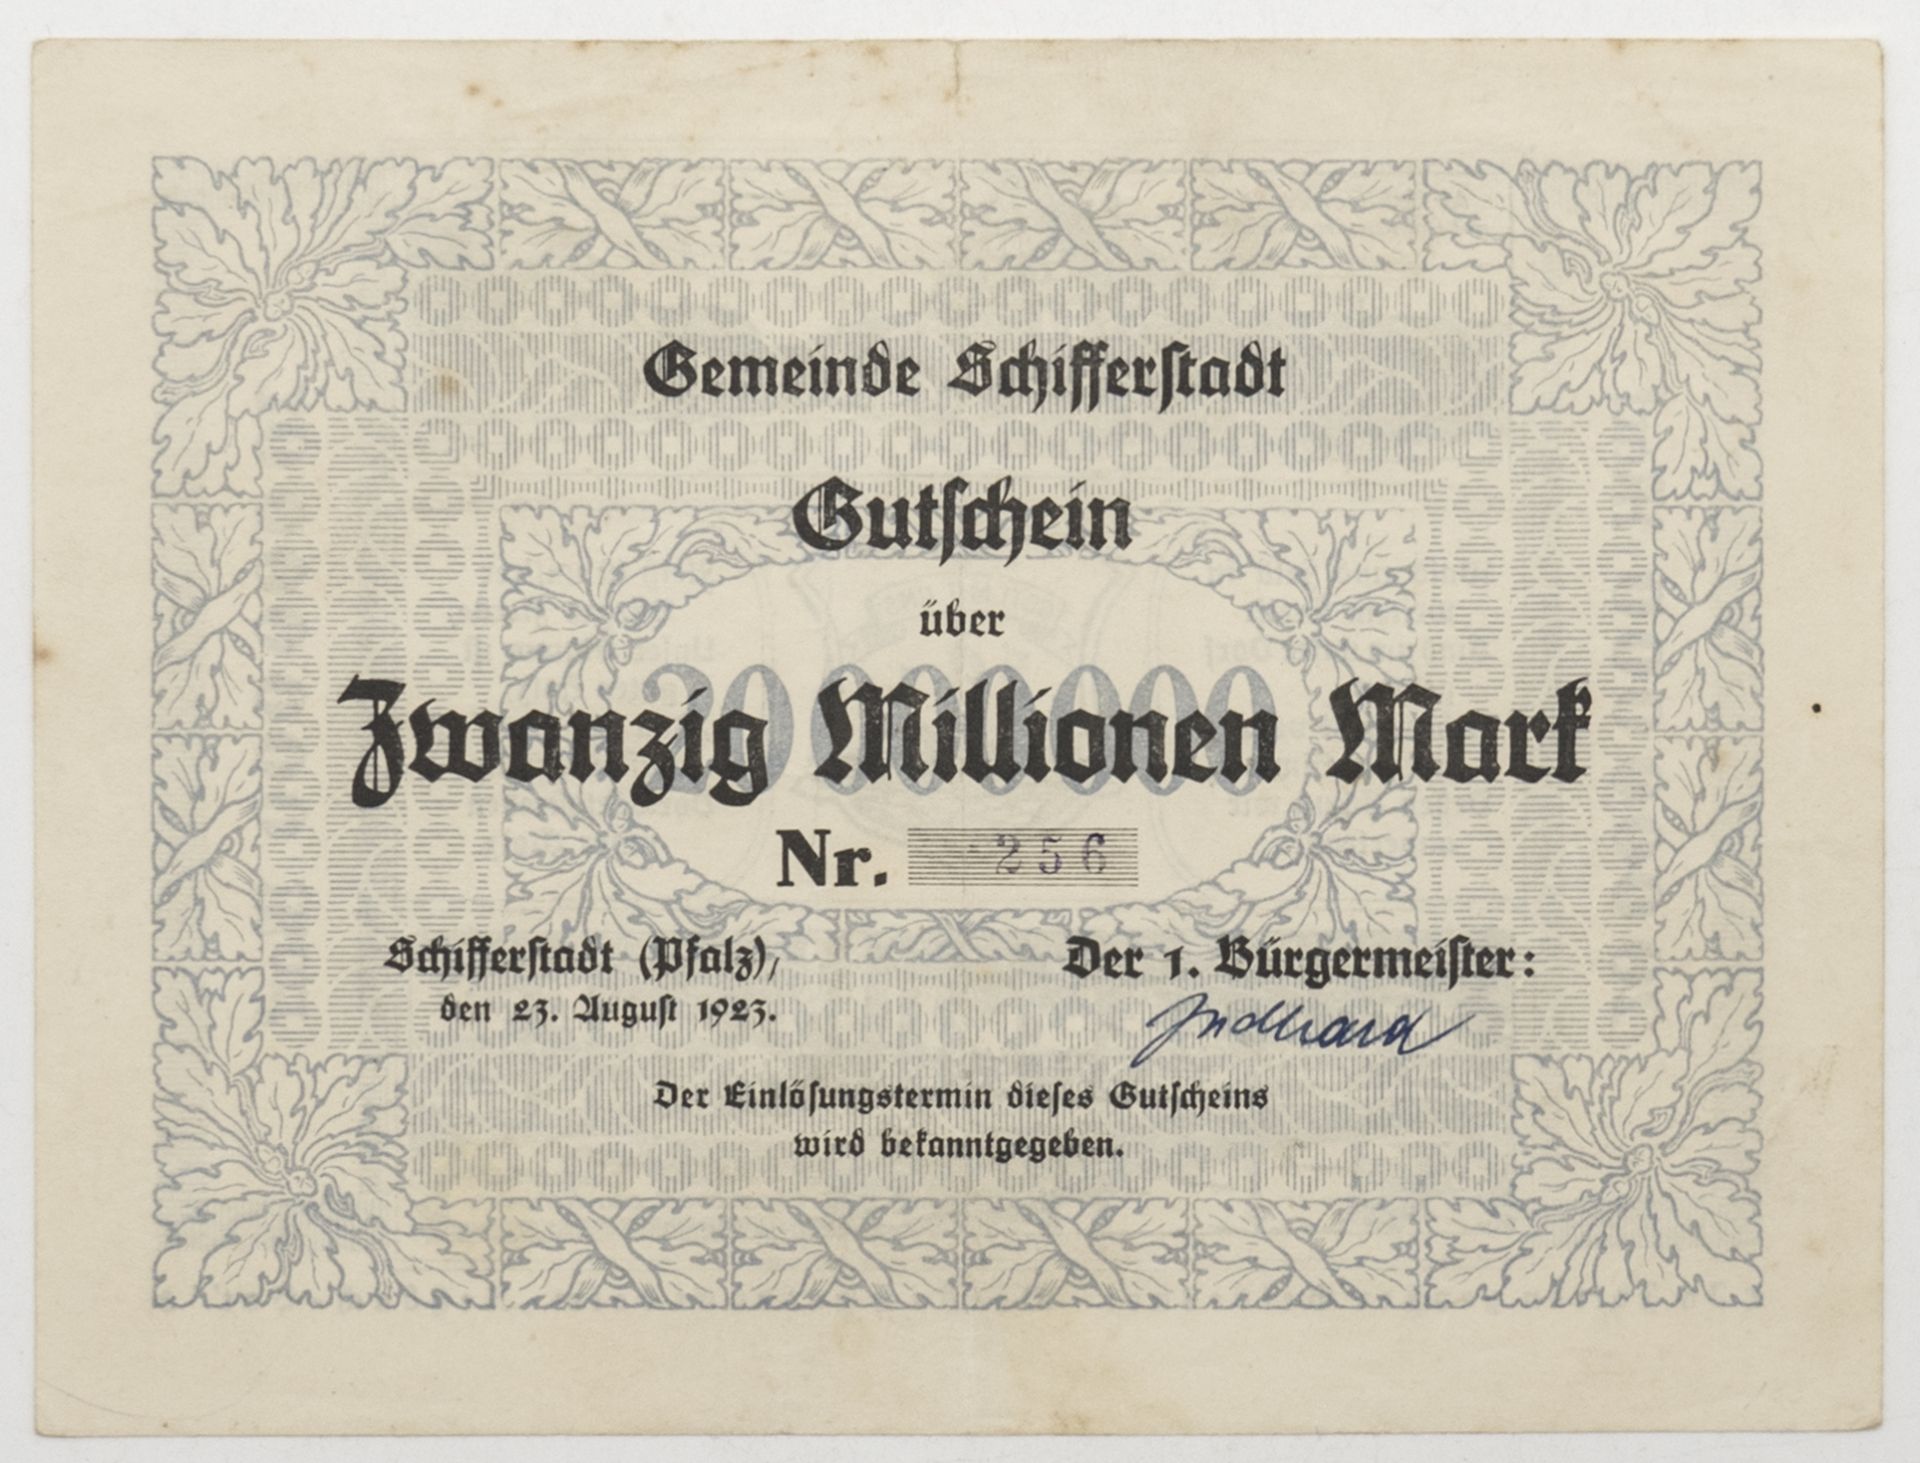 Gemeinde Schifferstadt 1923, Gutschein über 20 Millionen Mark. Nr. 256. 23. August 1923.